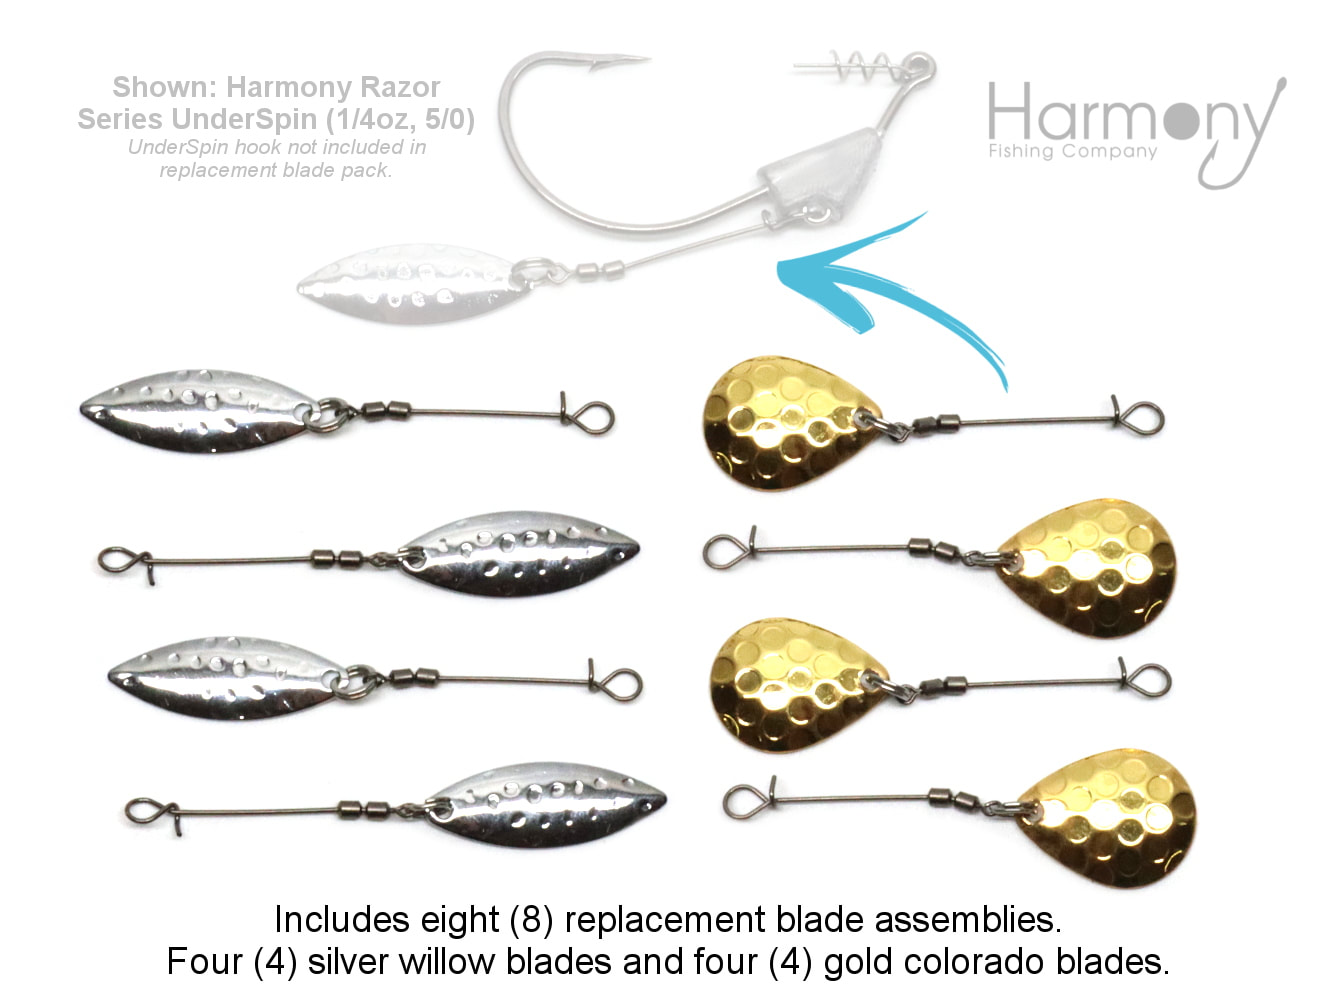 Swimbaits & UnderSpins - Harmony Fishing - Harmony Fishing Company